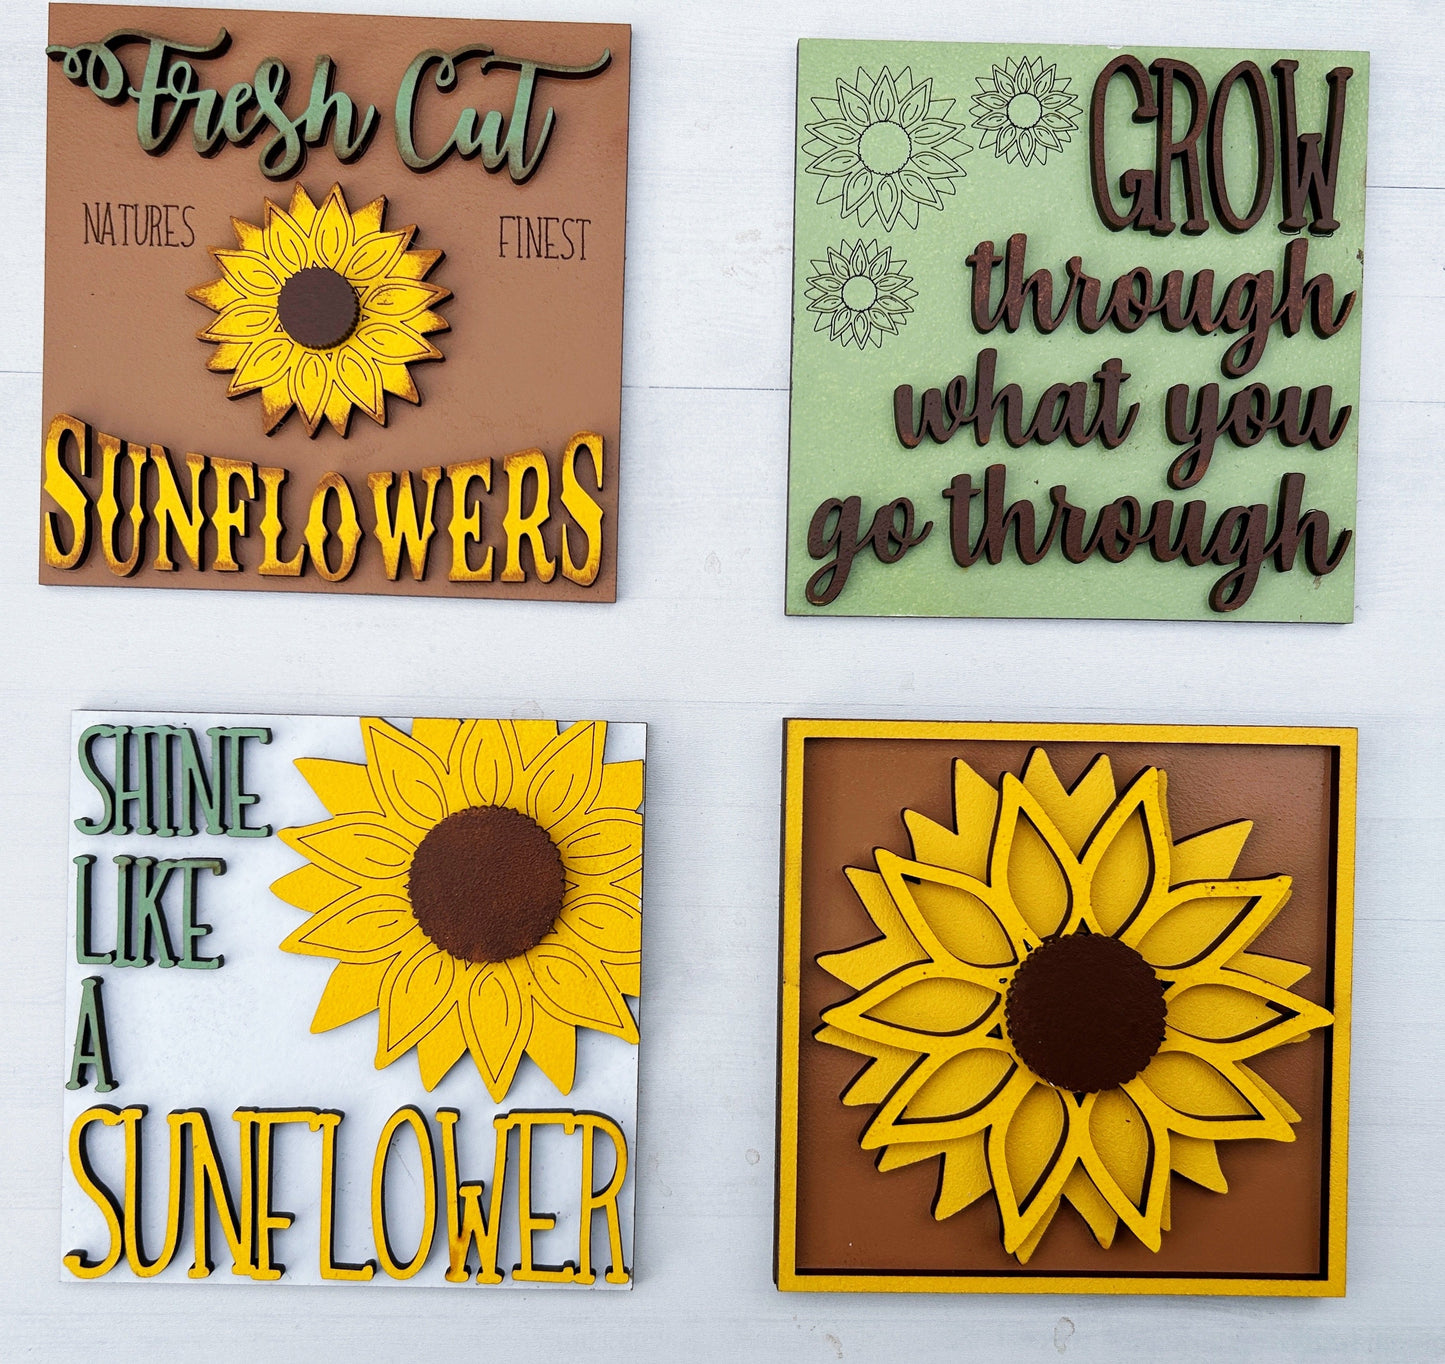 Sunflower Tile